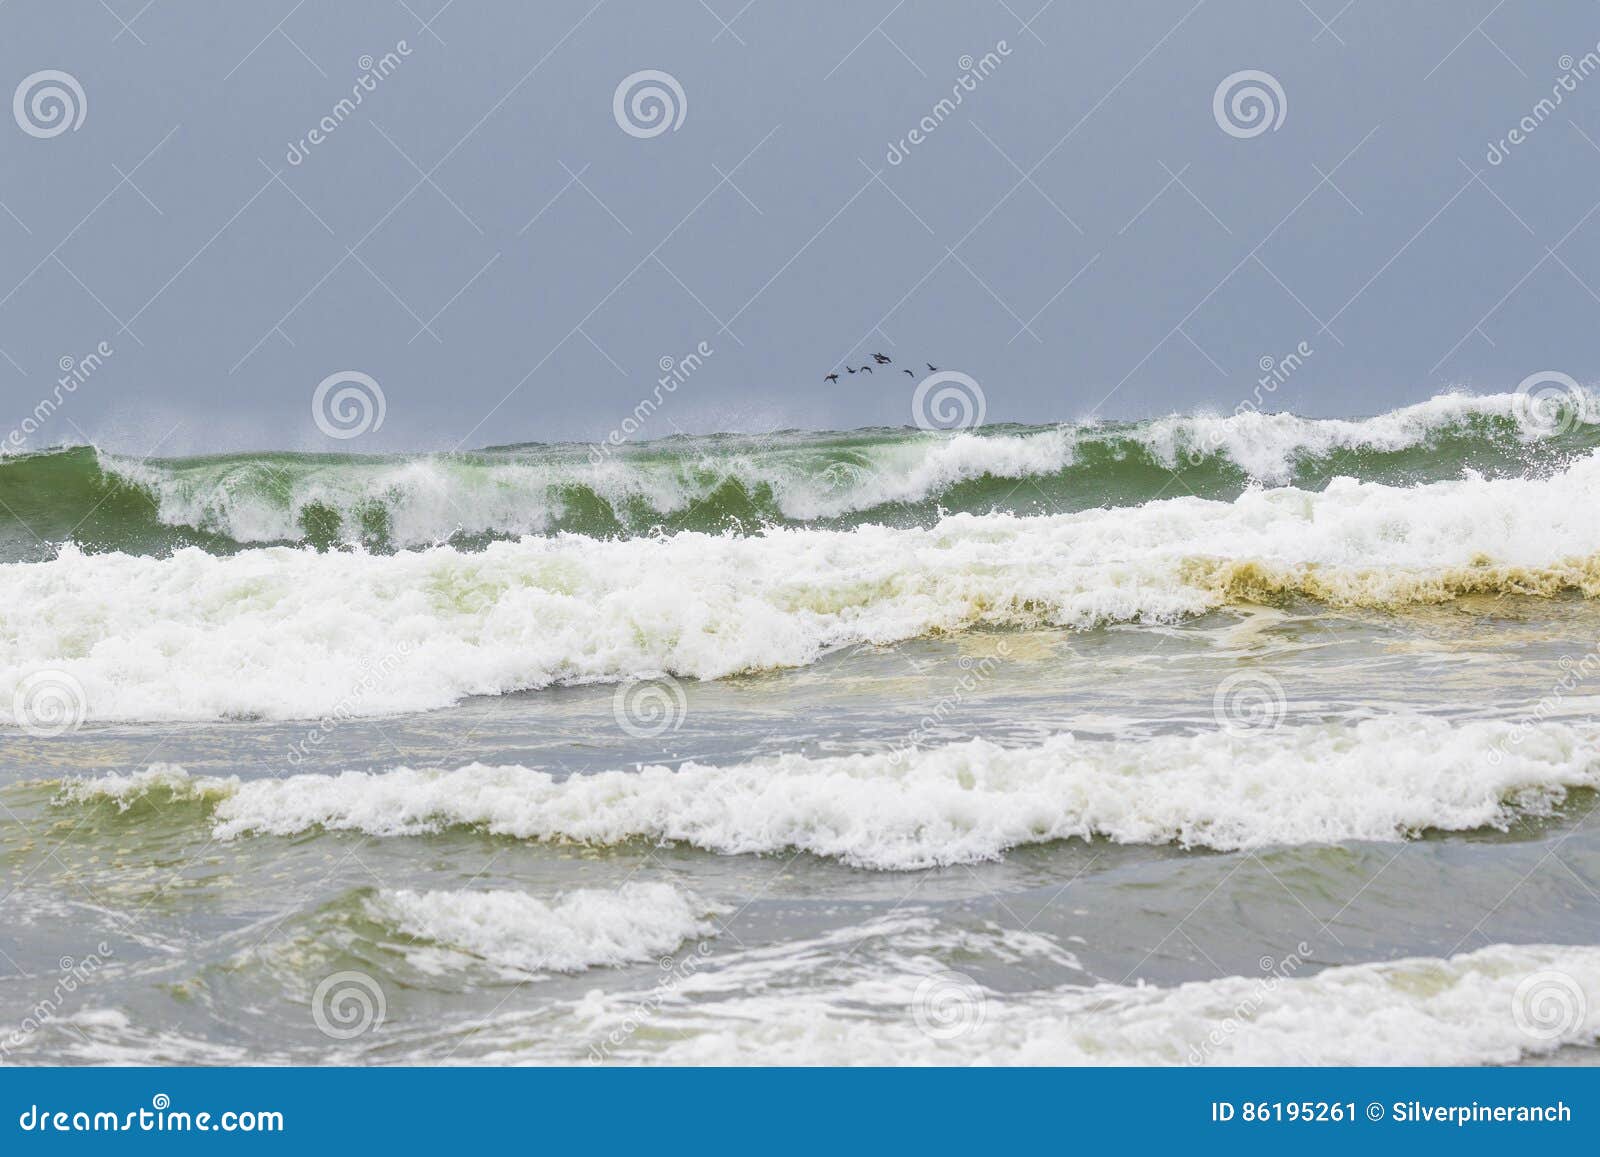 ocean shores waves